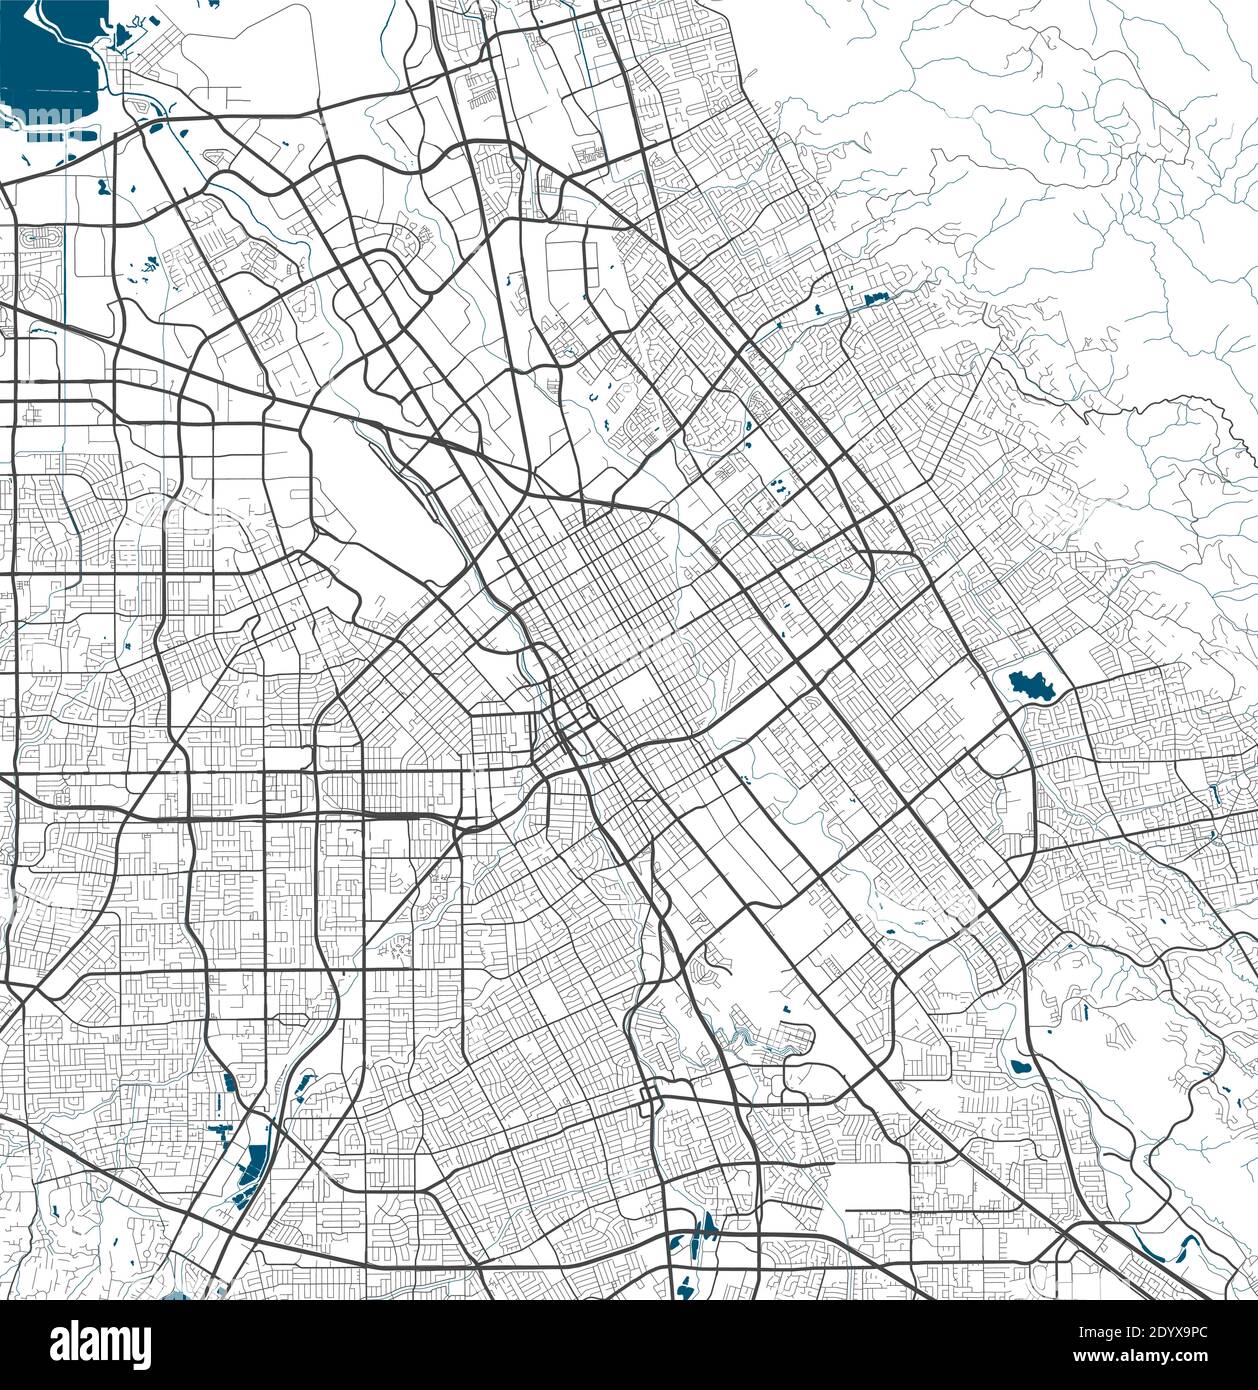 San Jose city map poster. Map of San Jose street map poster. San Jose map vector illustration. Stock Vector